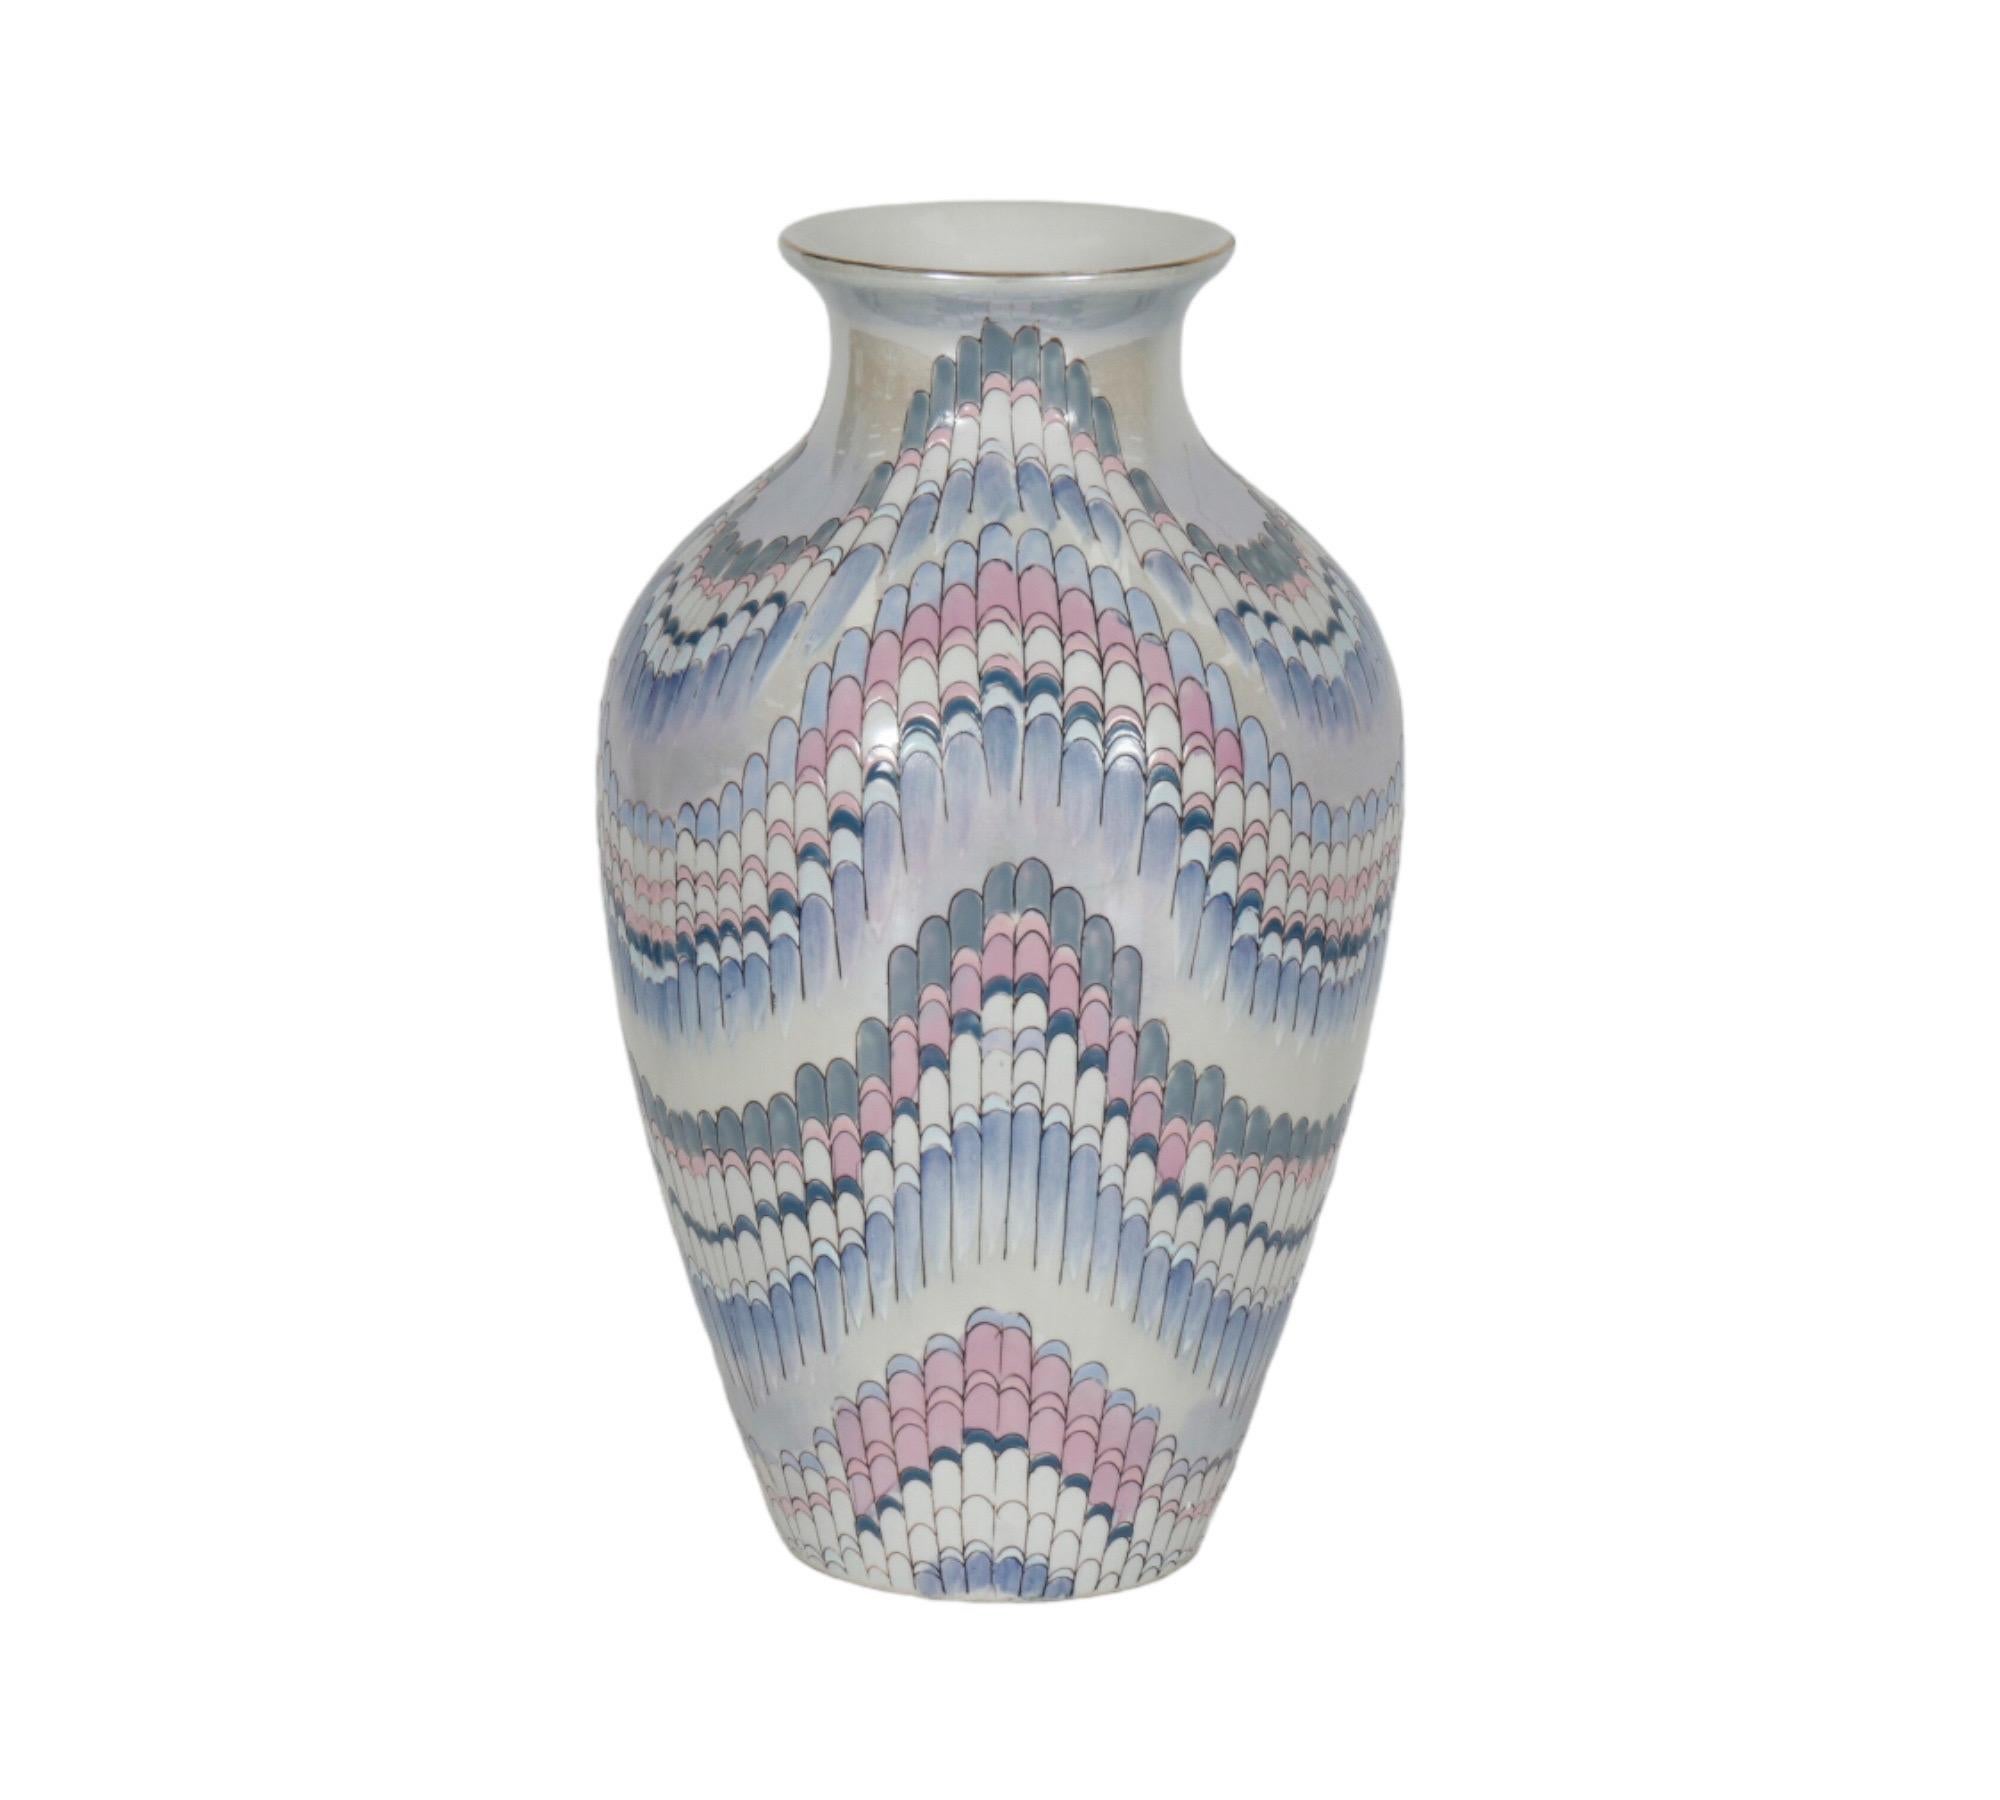 Nouveau Lustre Keramikvase von Toyo. Leicht geprägt mit einem Flammenstichmuster und handbemalt mit schillernden Rosa-, Violett-, Blau- und Jade-Tönen auf Weiß. Darunter die Aufschrift 